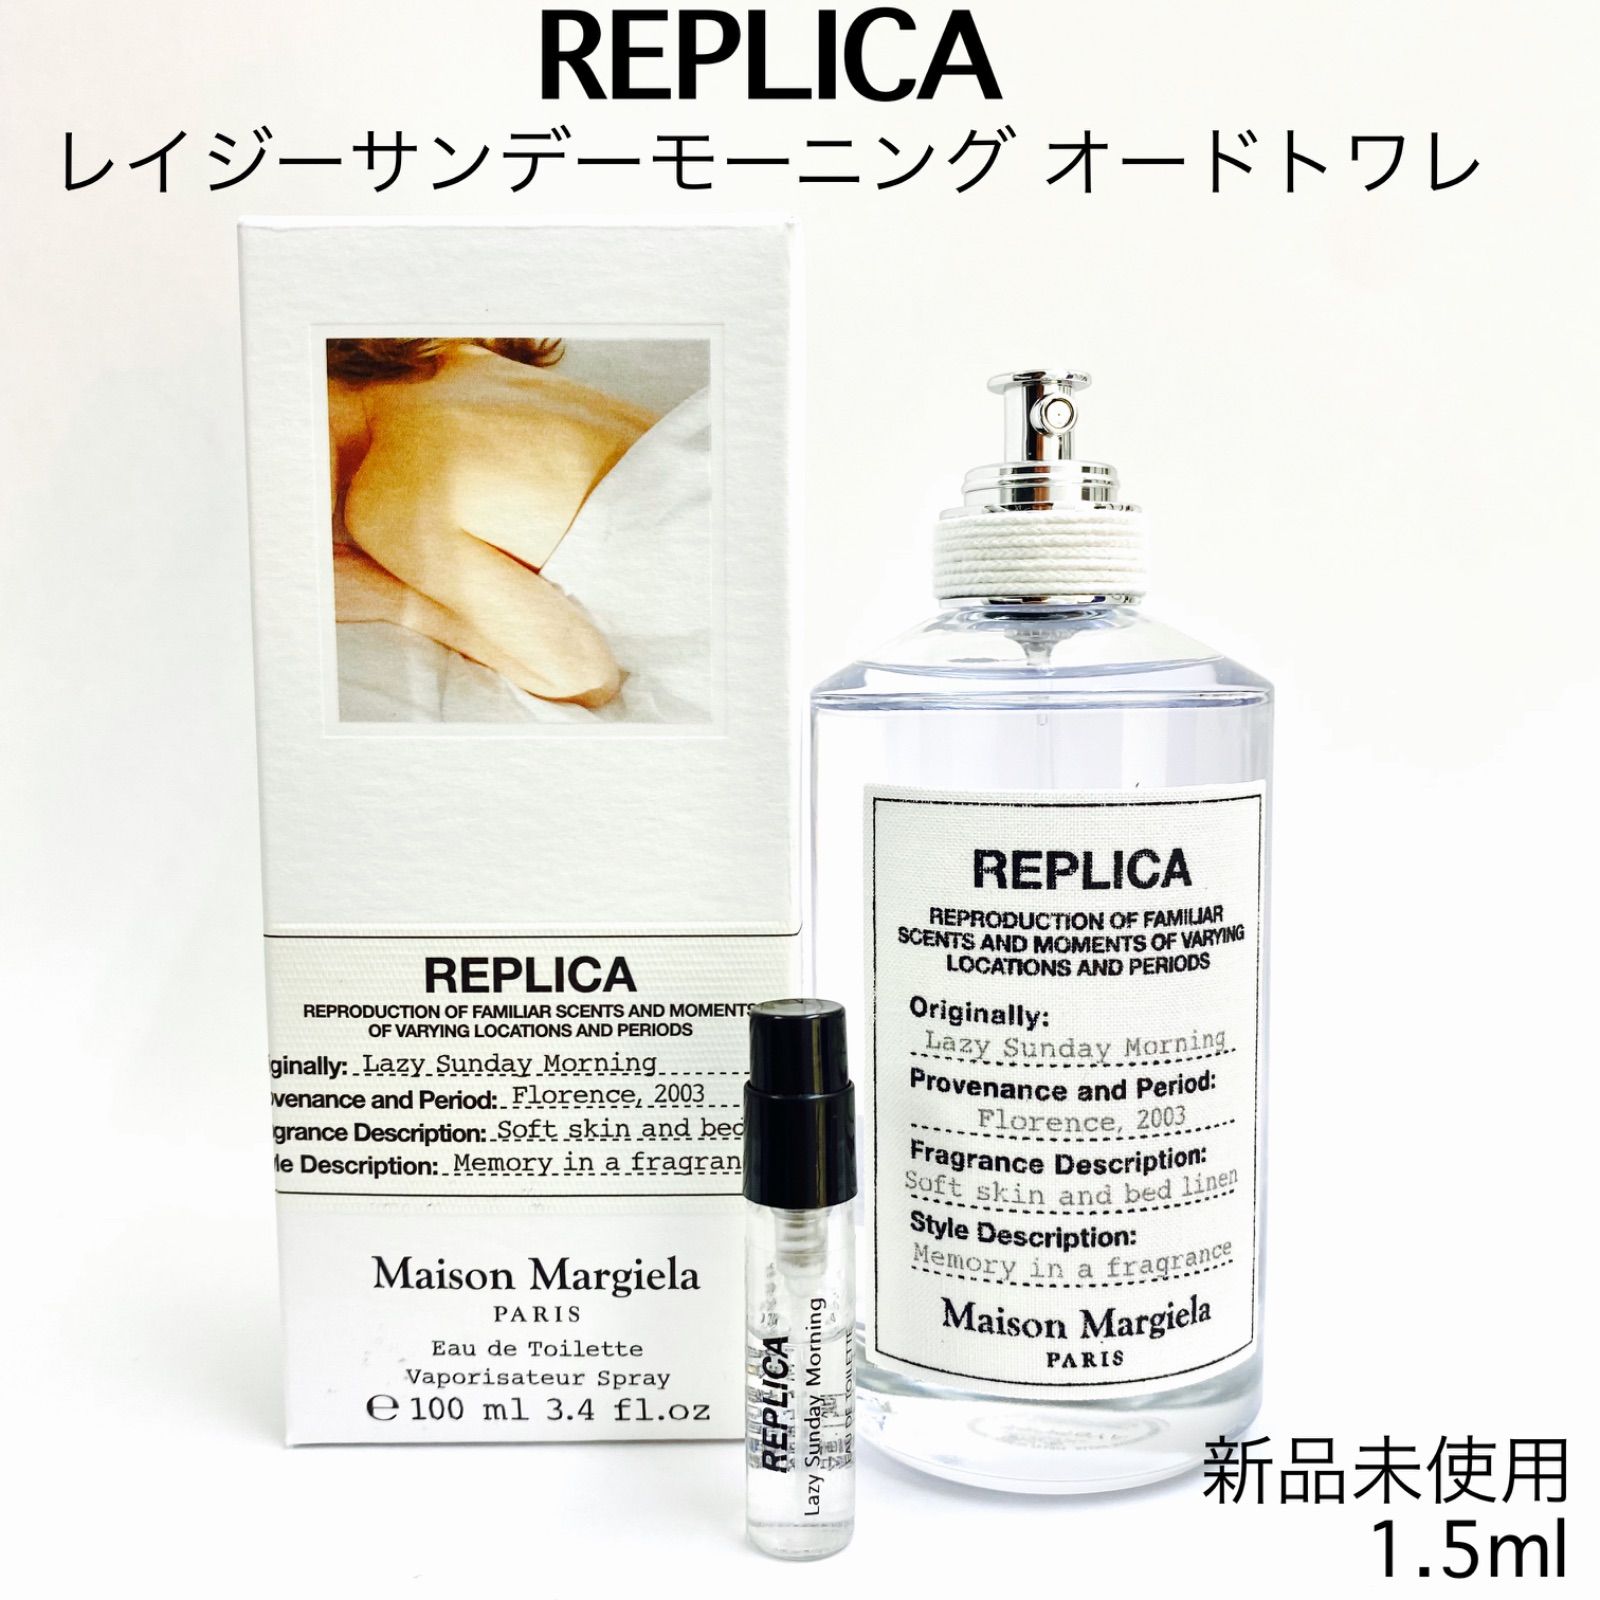 Maison Margiela レイジーサンデーモーニング 1.5ml 香水 - 香水(ユニ